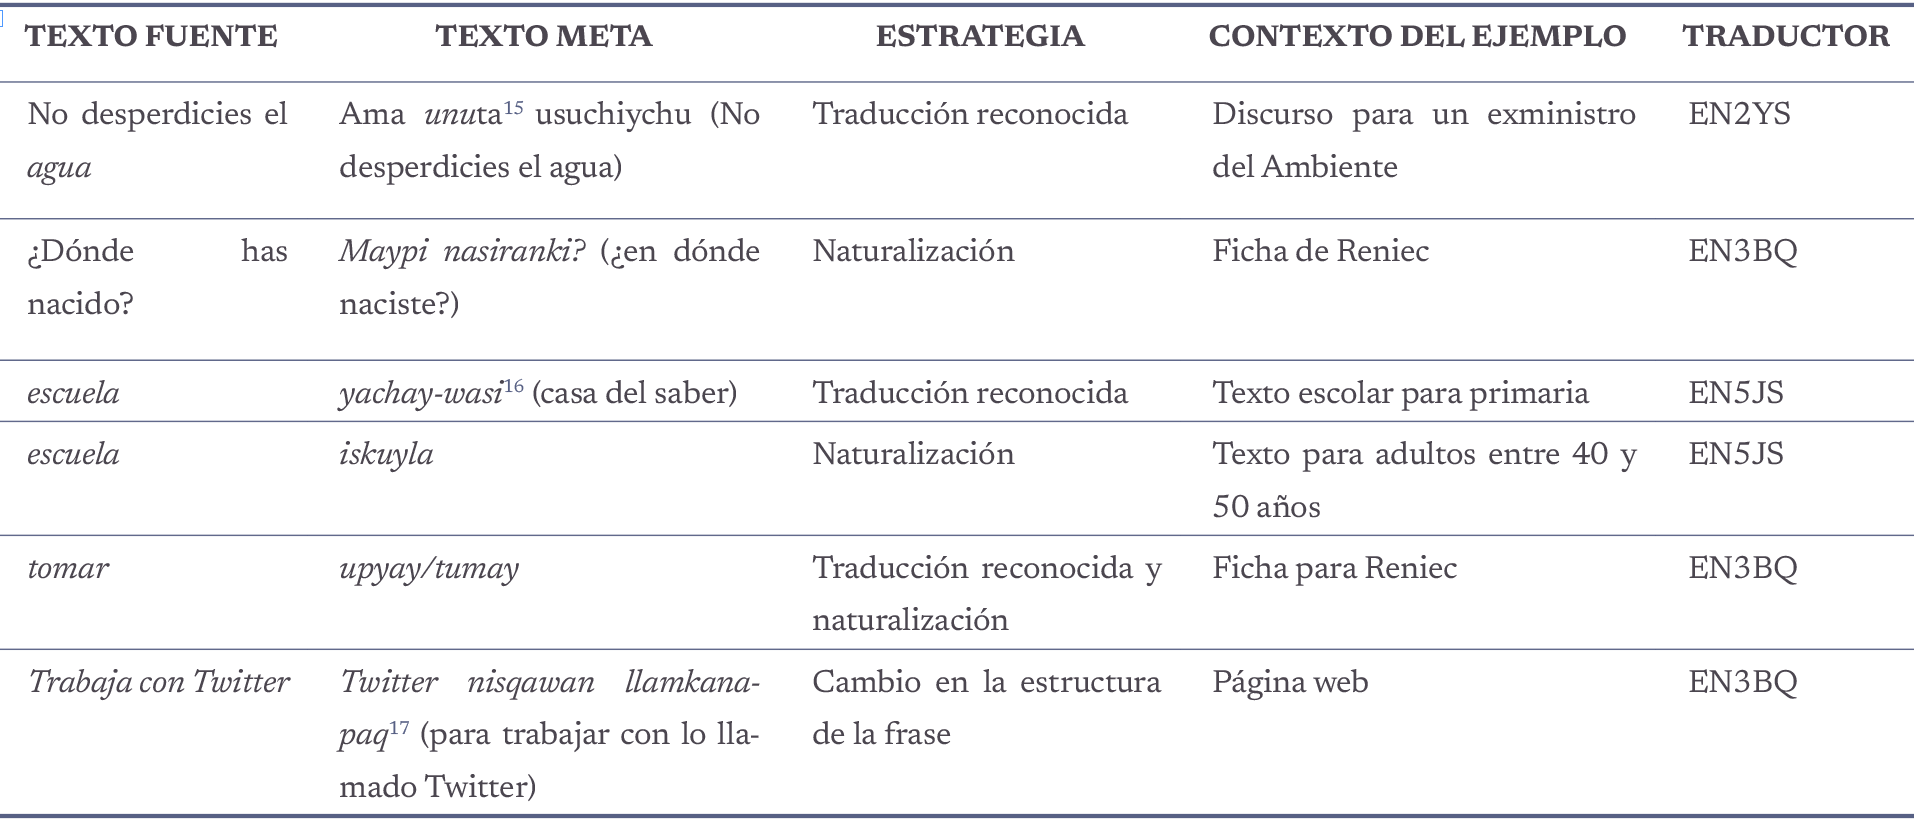 Ejemplos de las estrategias de traducción reconocida, naturalización y cambio en la estructura de la frase.